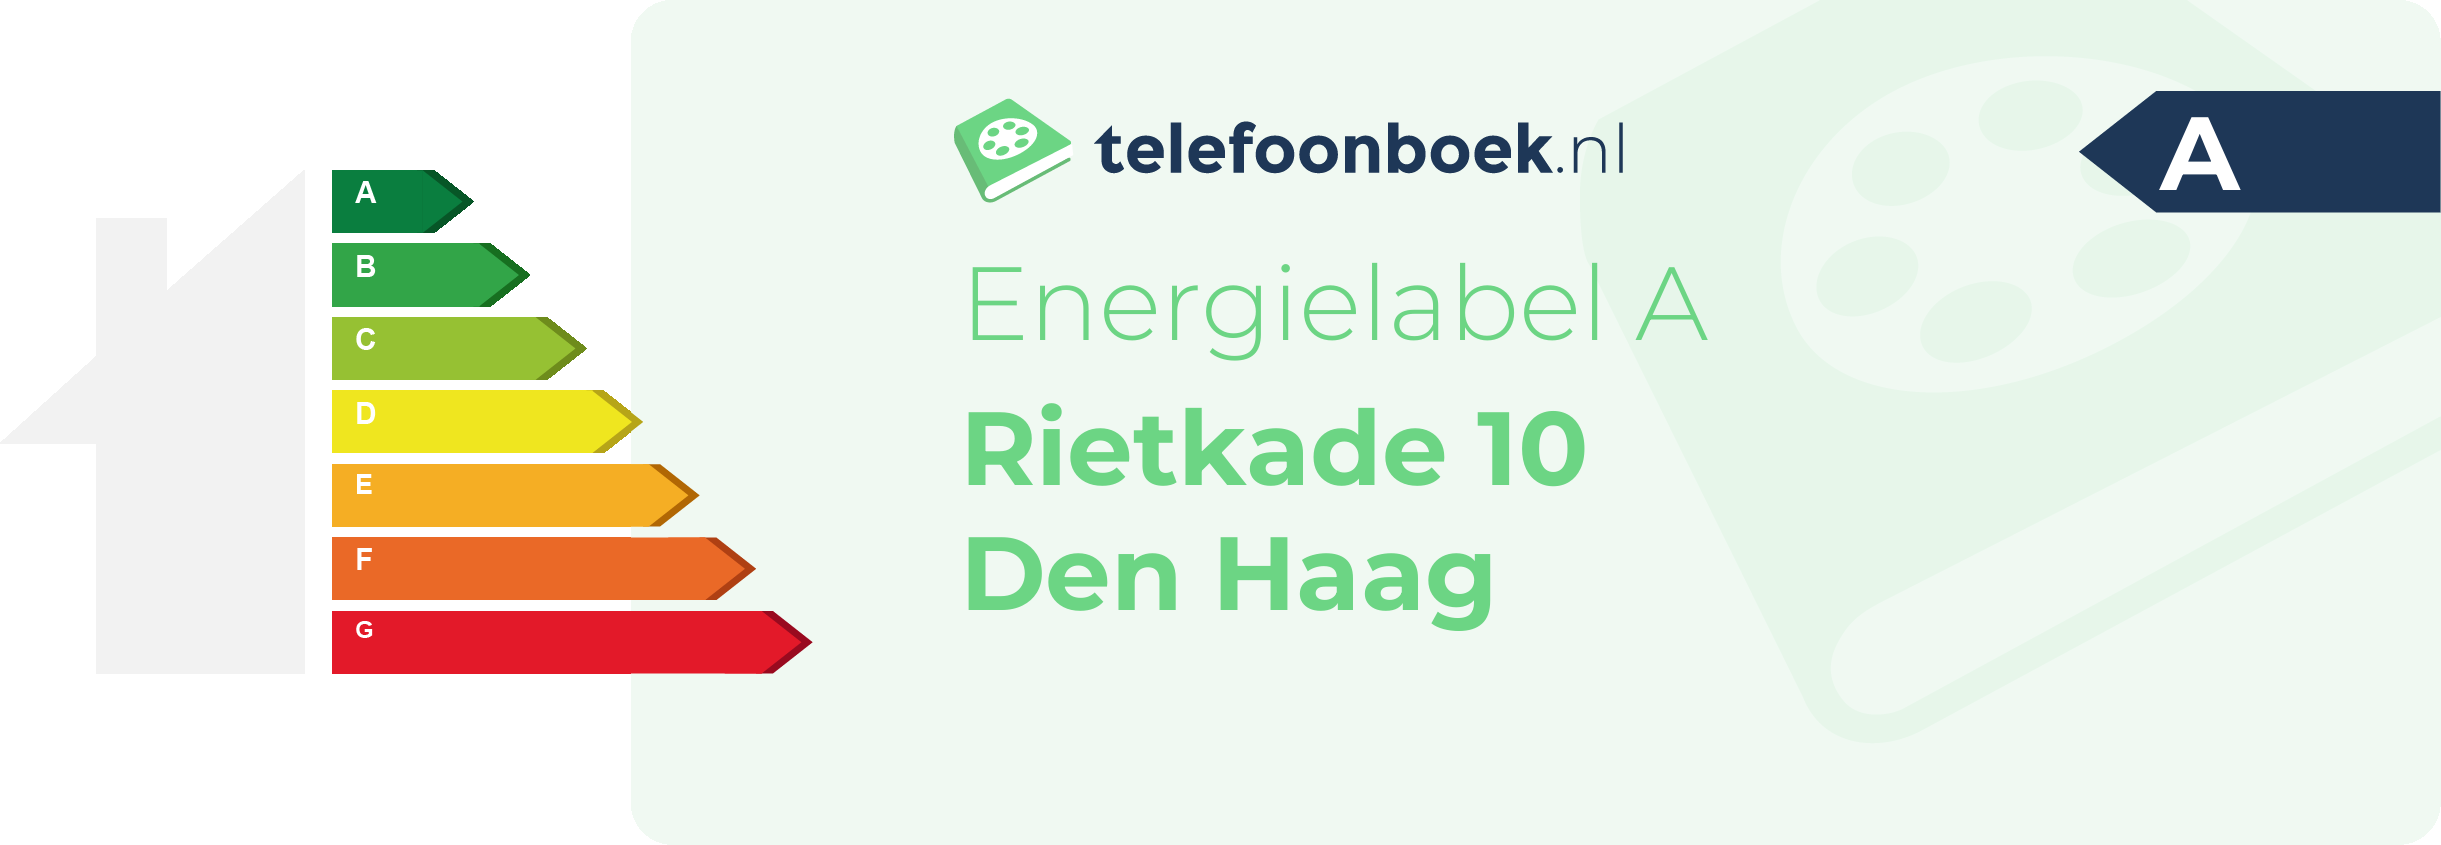 Energielabel Rietkade 10 Den Haag